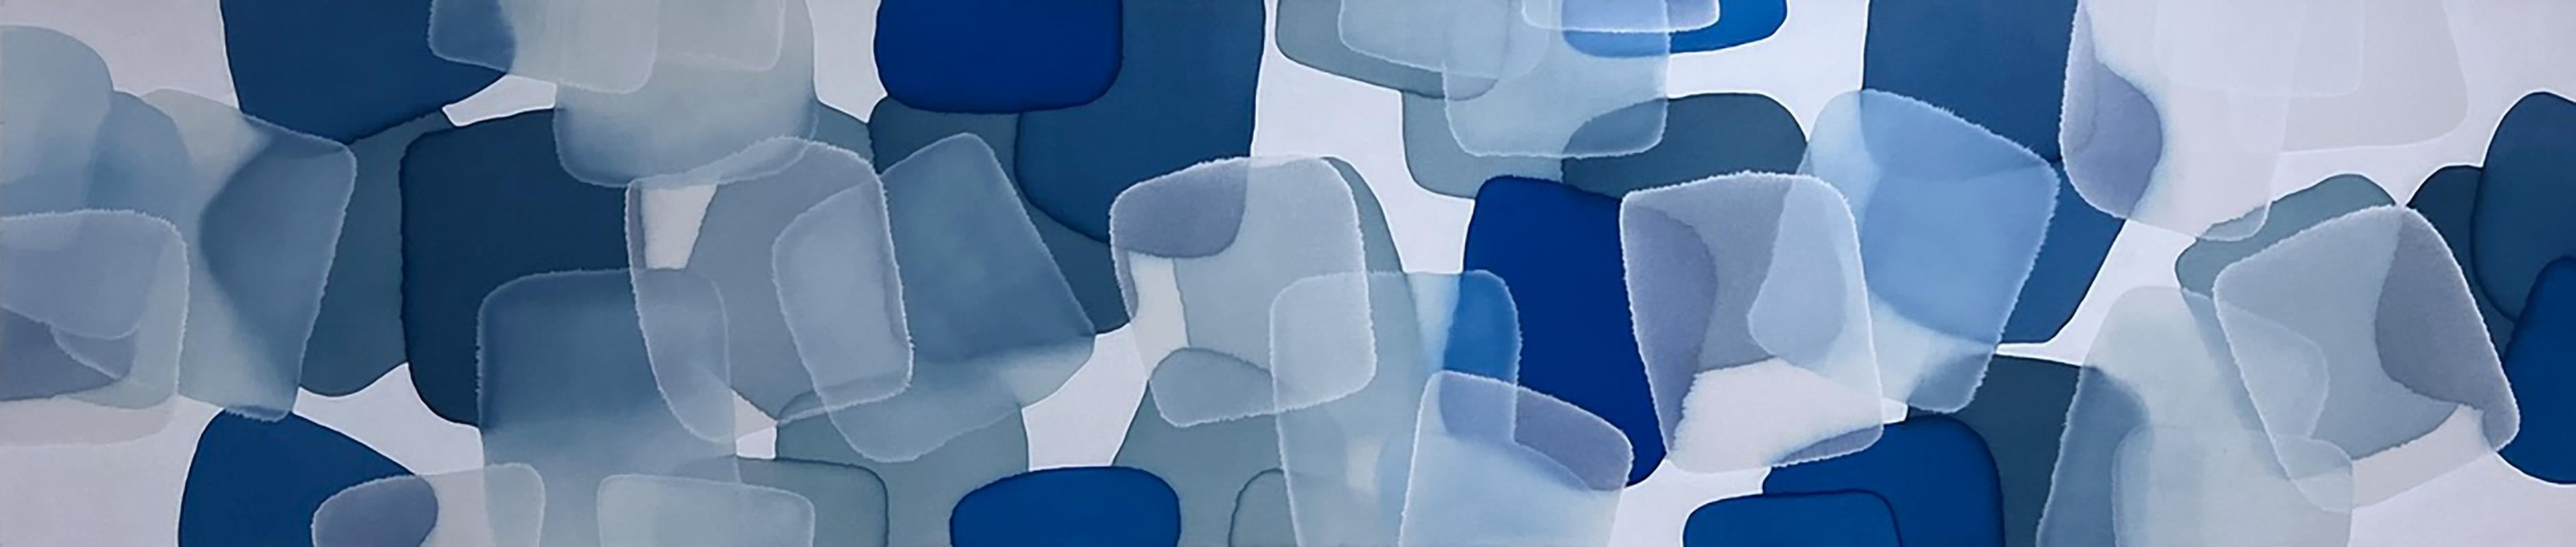 CHARLIE BLUETT
Le rêve bleu profond
Acrylique sur toile
18 x 82 in.
____________________________

Les œuvres d'art de Charlie Bluett sont motivées par sa passion primordiale pour la Nature et le monde naturel. C'est l'éthéré, la beauté, le flux et